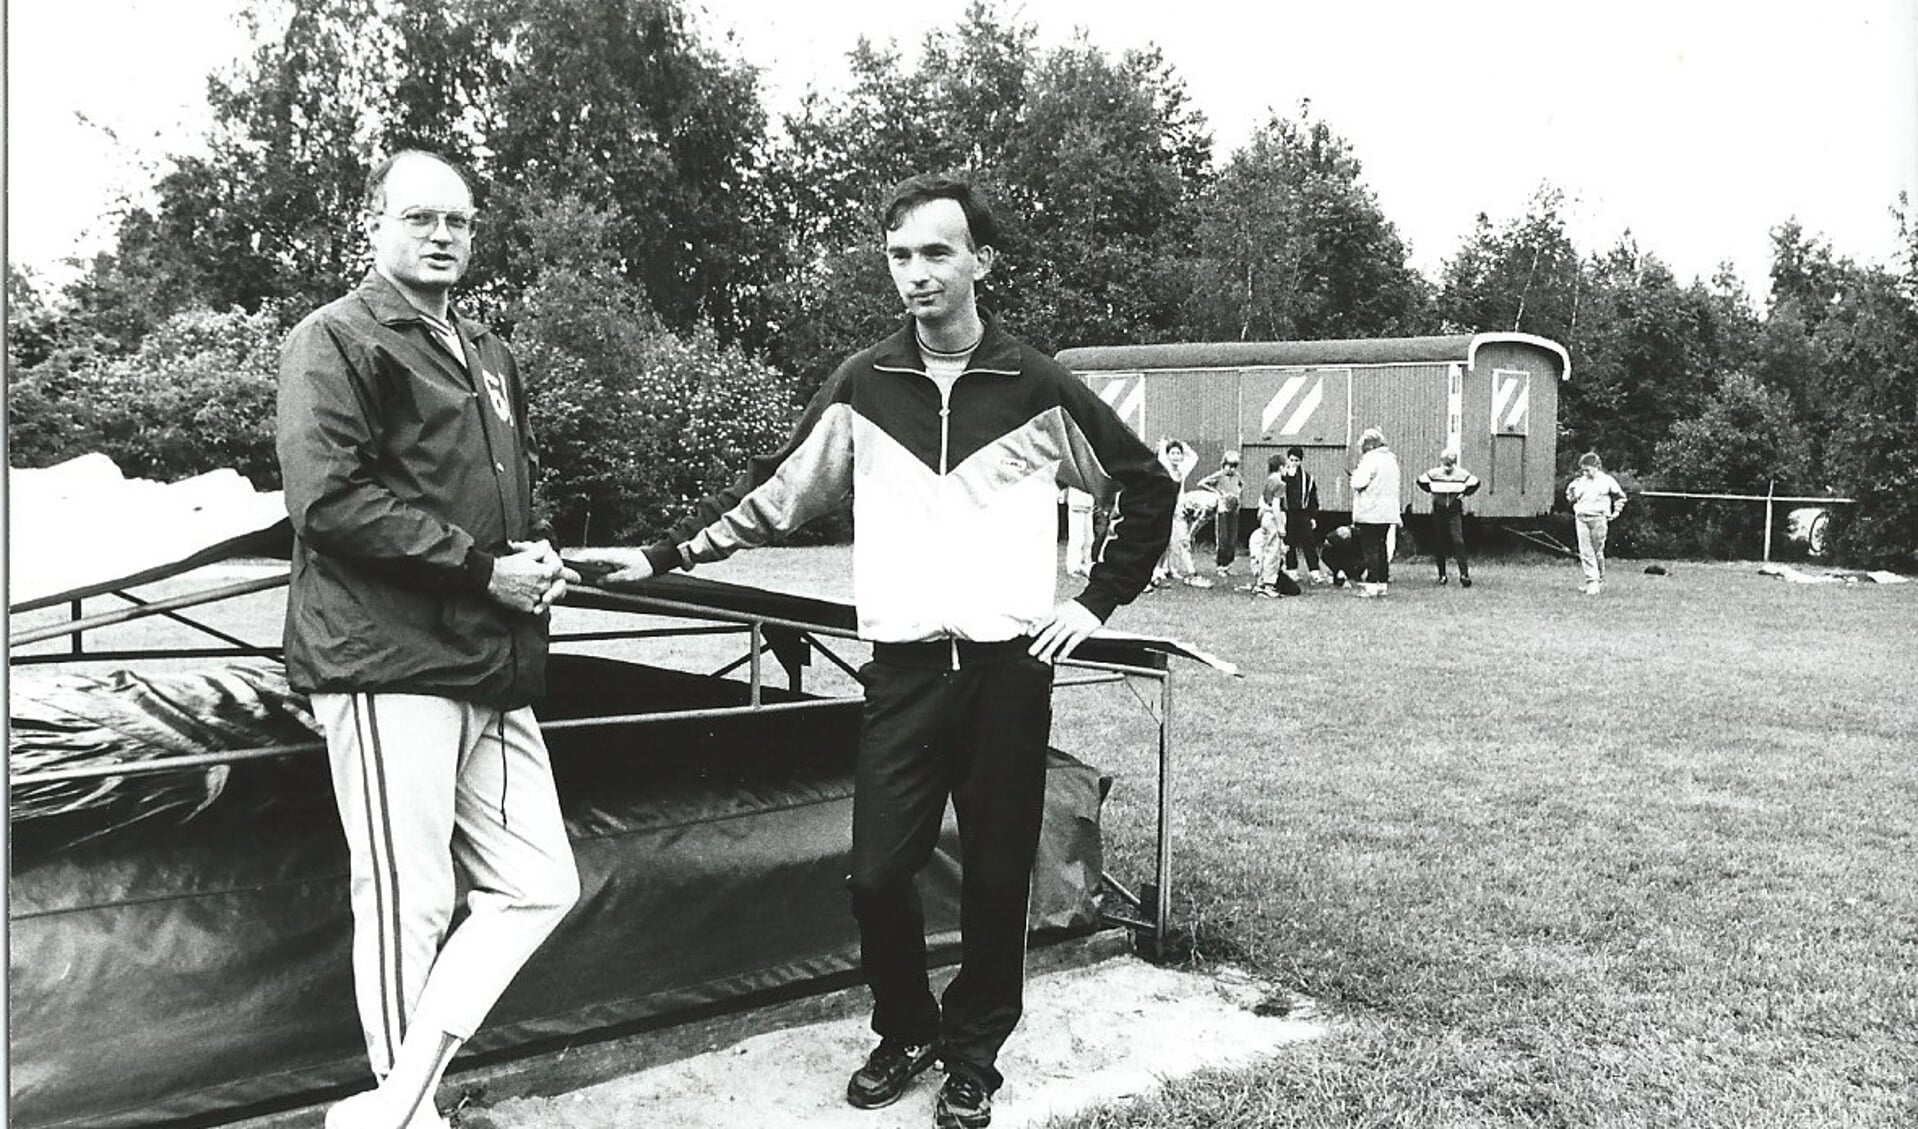 1986: voorzitter Martin de Groot en trainer Richard van Egdom bij de hoogspringmat